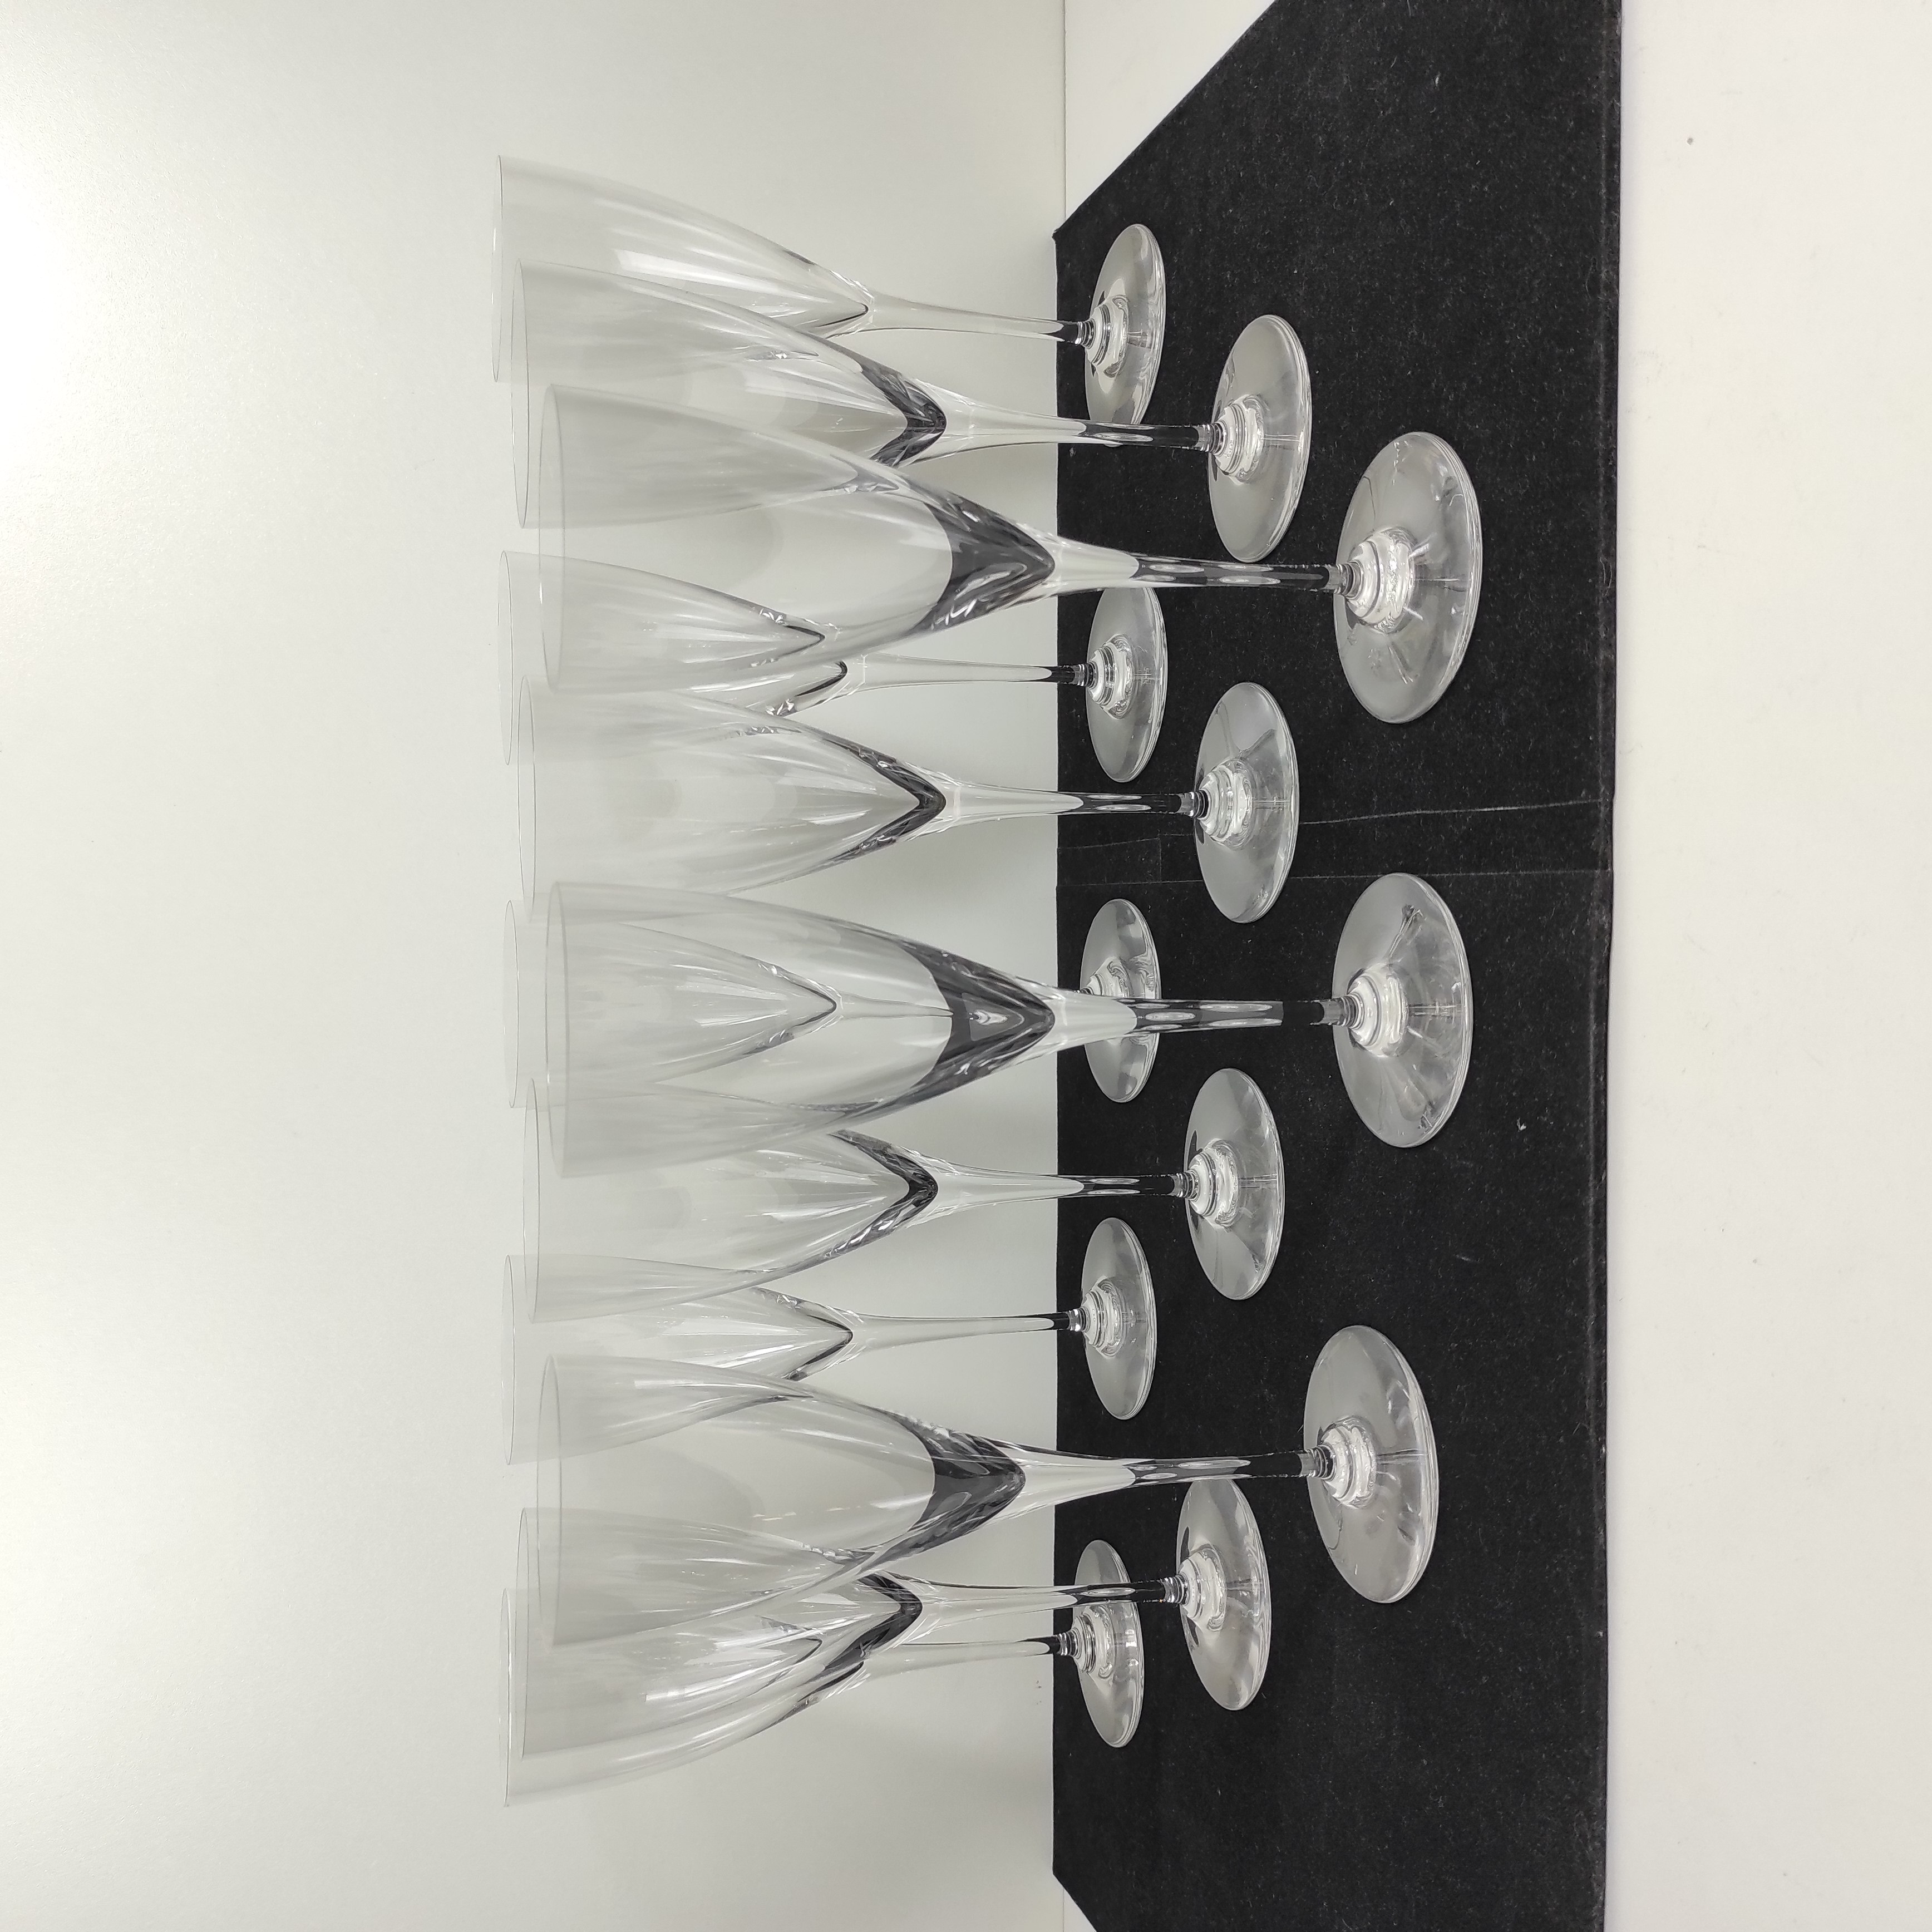 12 verres à eau en cristal Baccarat